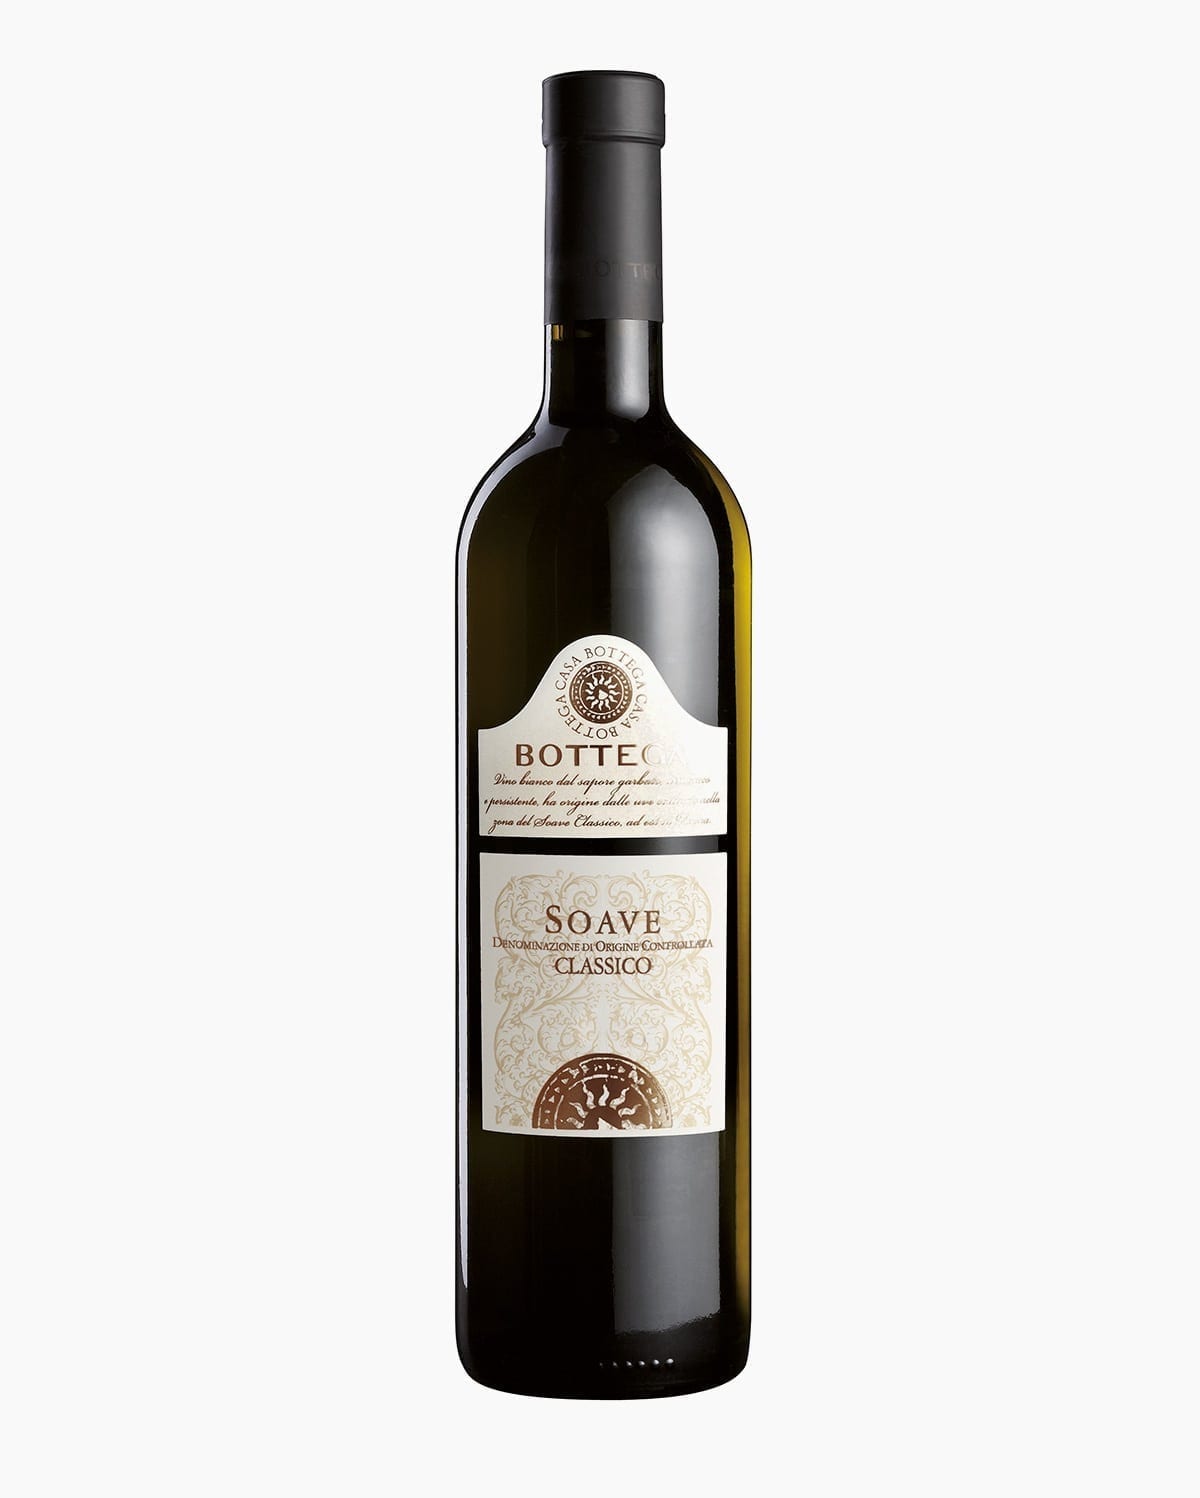 Soave classico doc - Italian White Wine - Bottega Spa